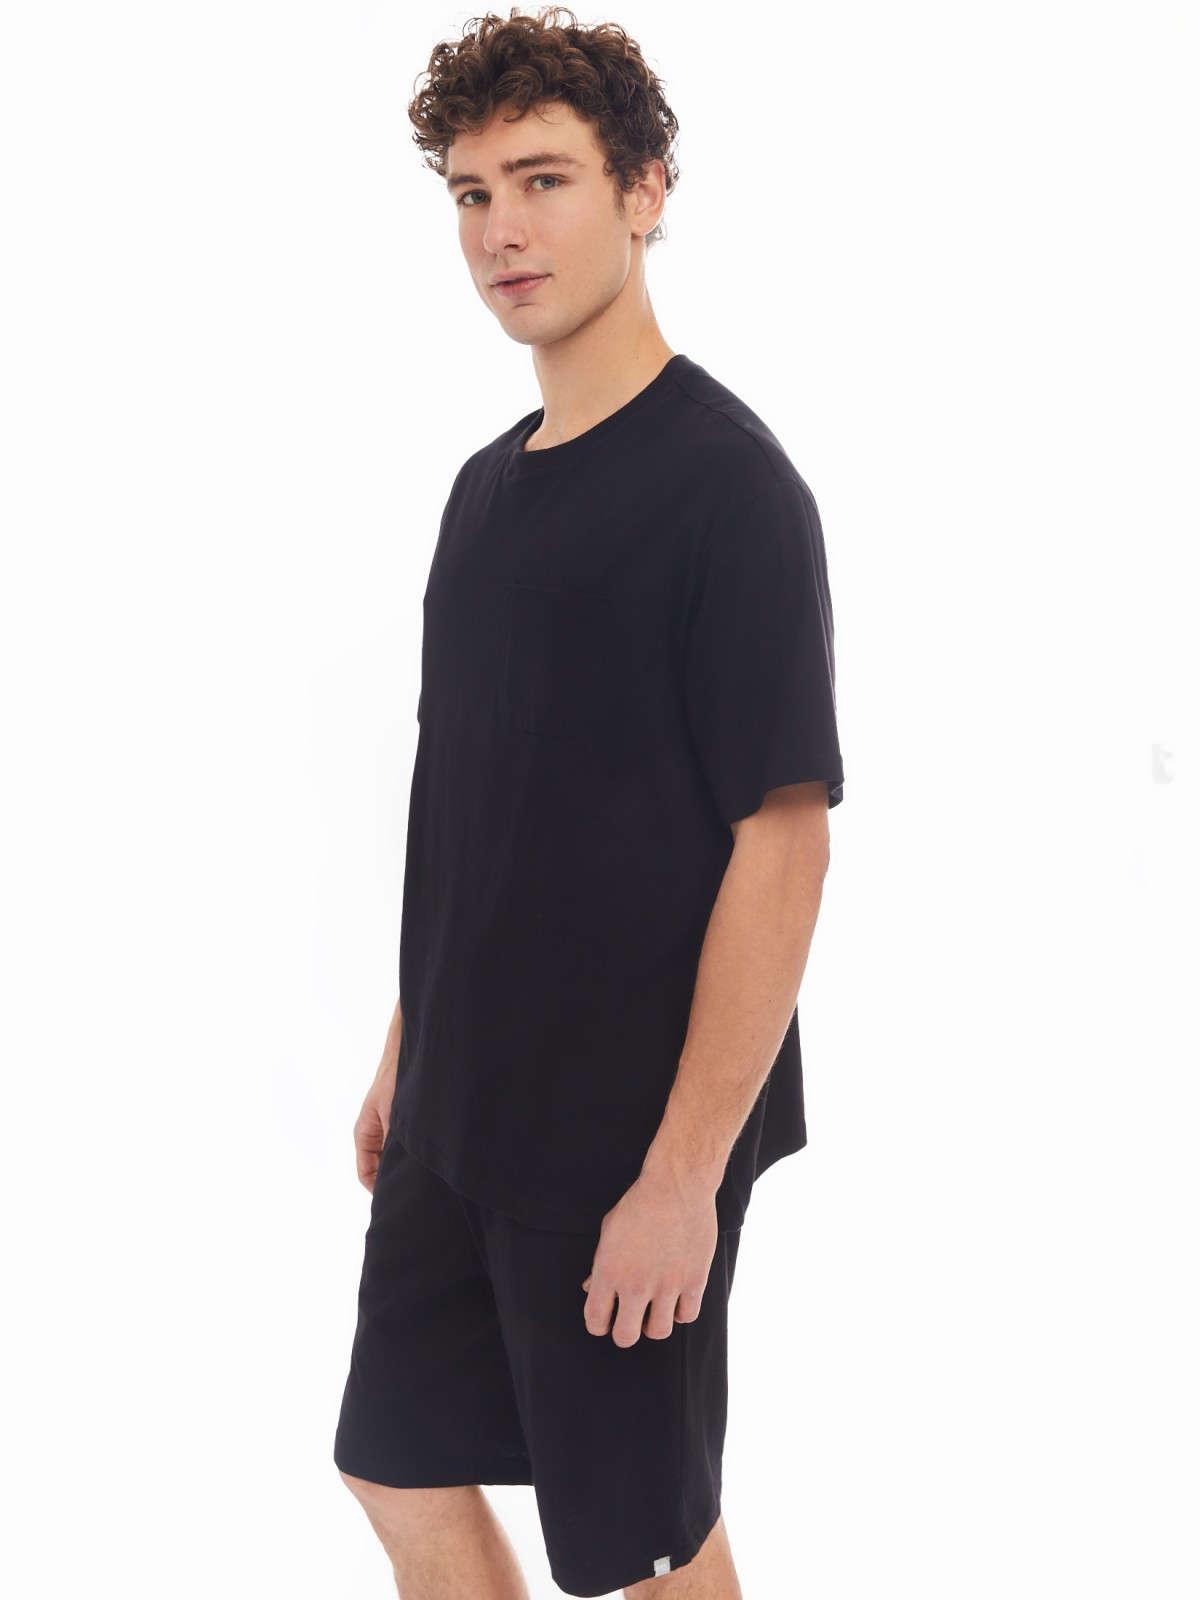 Домашний комплект из хлопка (футболка, шорты) zolla 61413870W041, цвет черный, размер S - фото 3